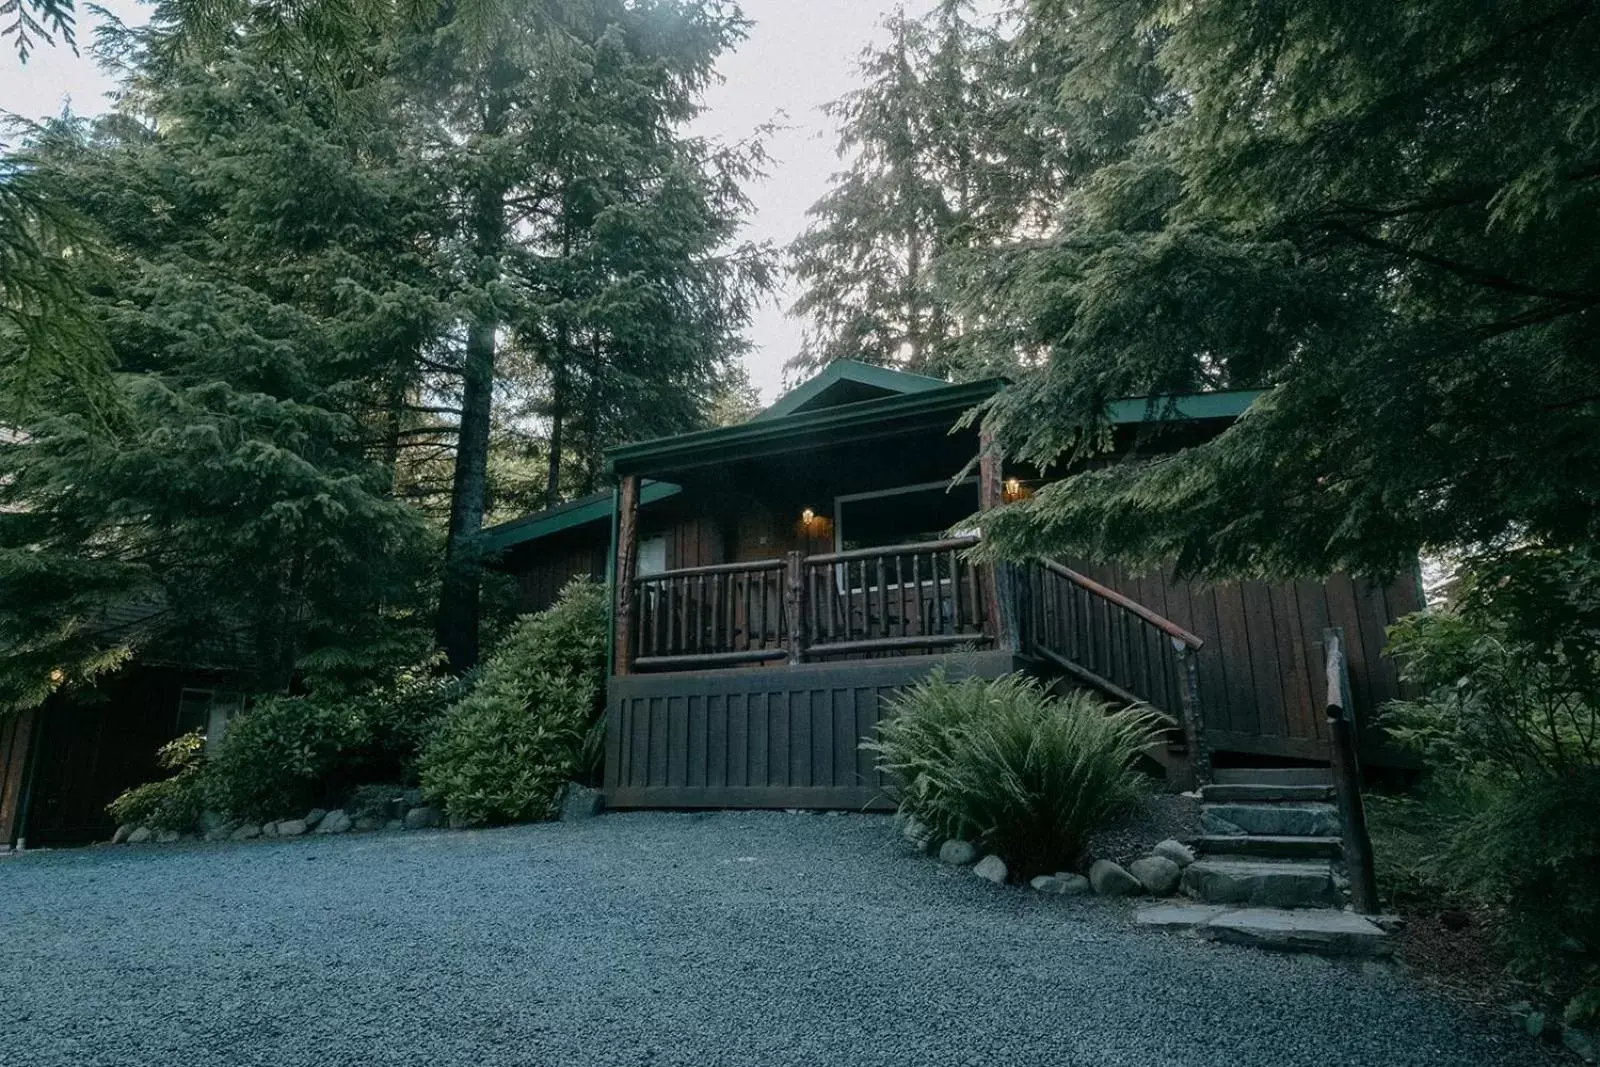 Property Building in Wild Coast Wilderness Resort